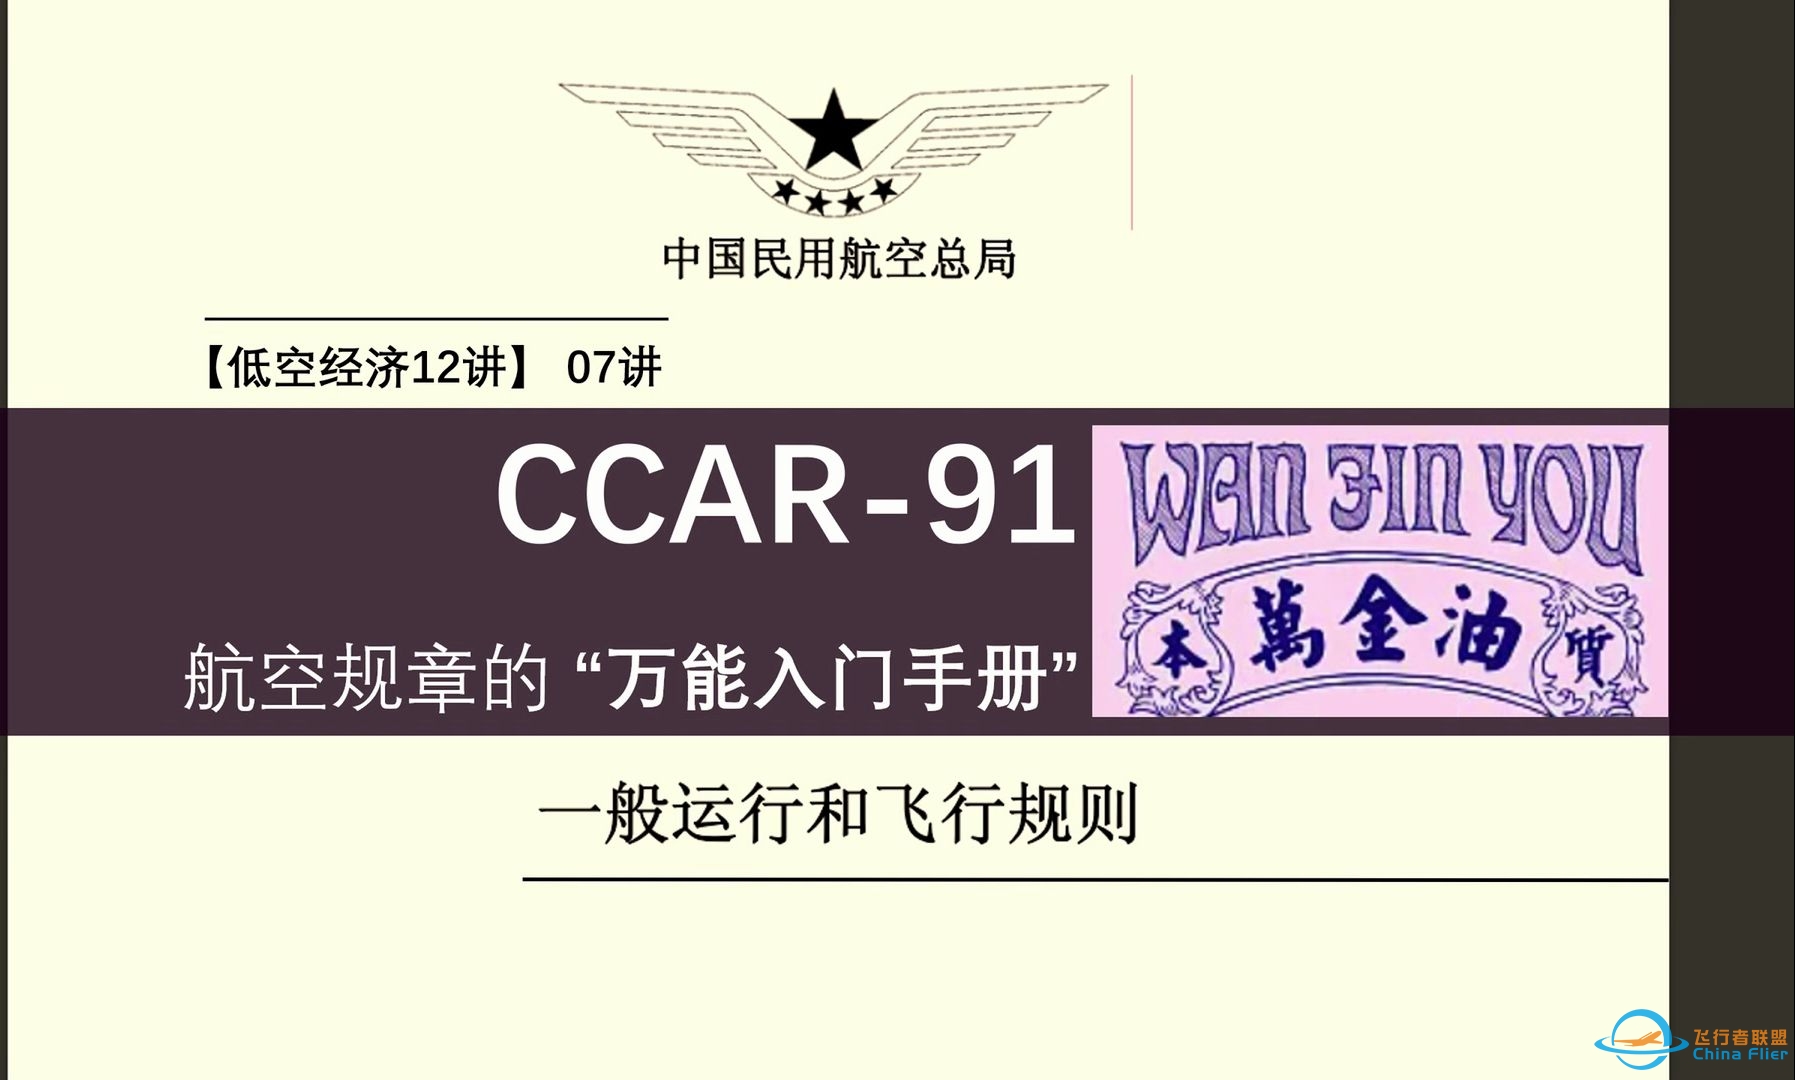 现行版民航CCAR-91规章 全网最硬解读视频（低空经济12讲-07集 专题邀请报告）-8155 